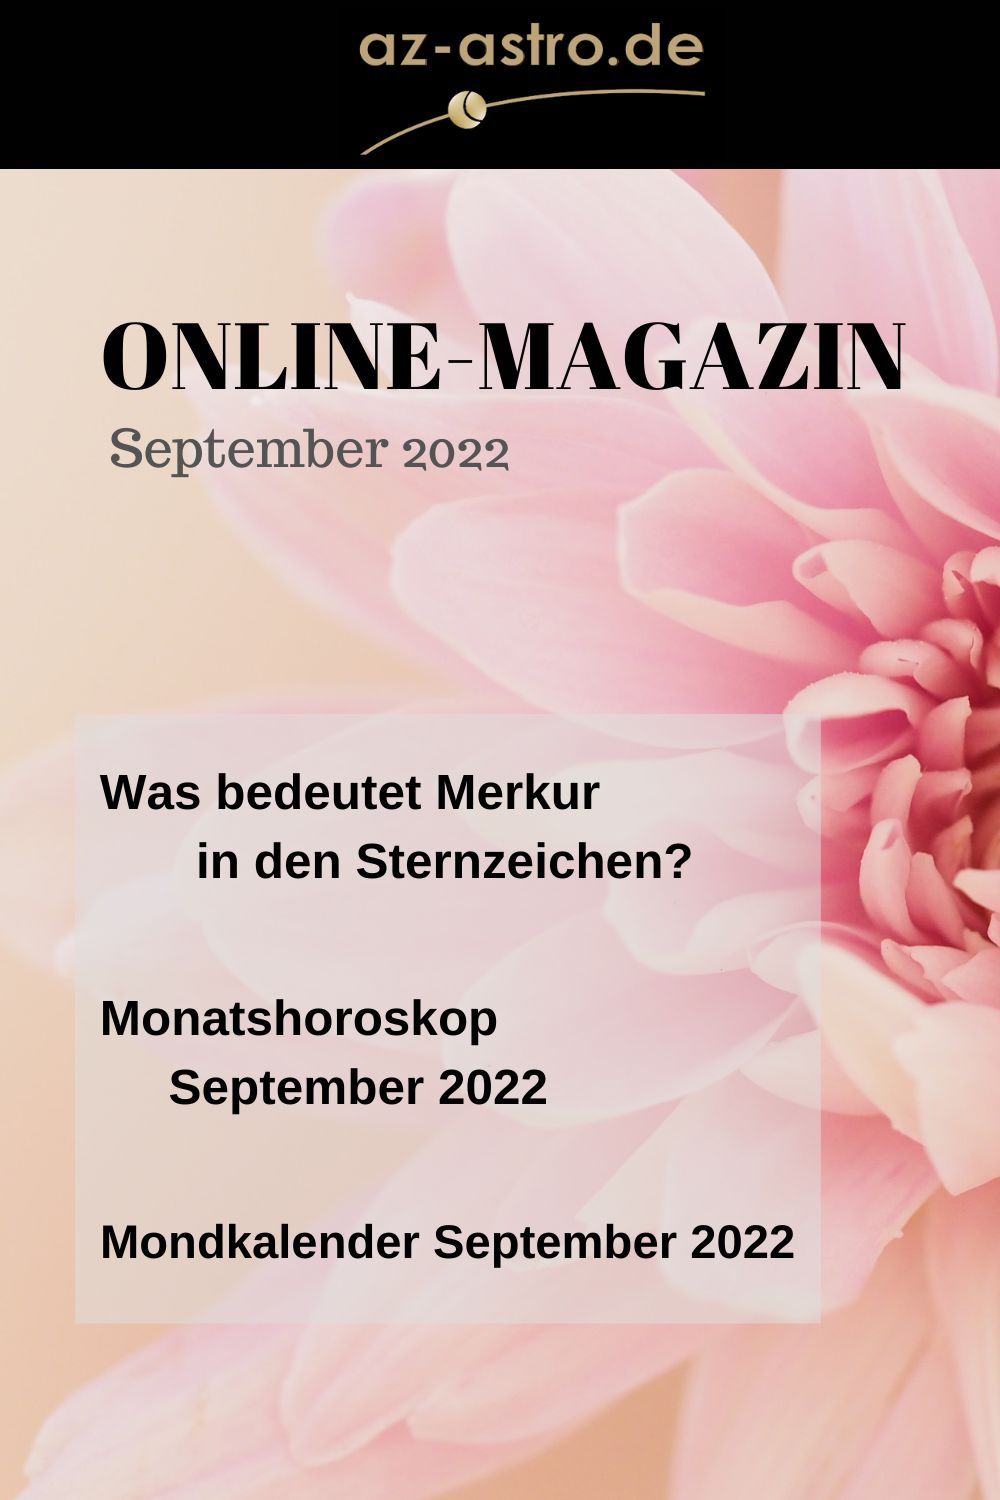 Online-Magazin September 2022 web (Pinterest-Pin (1000 × 1500 px))